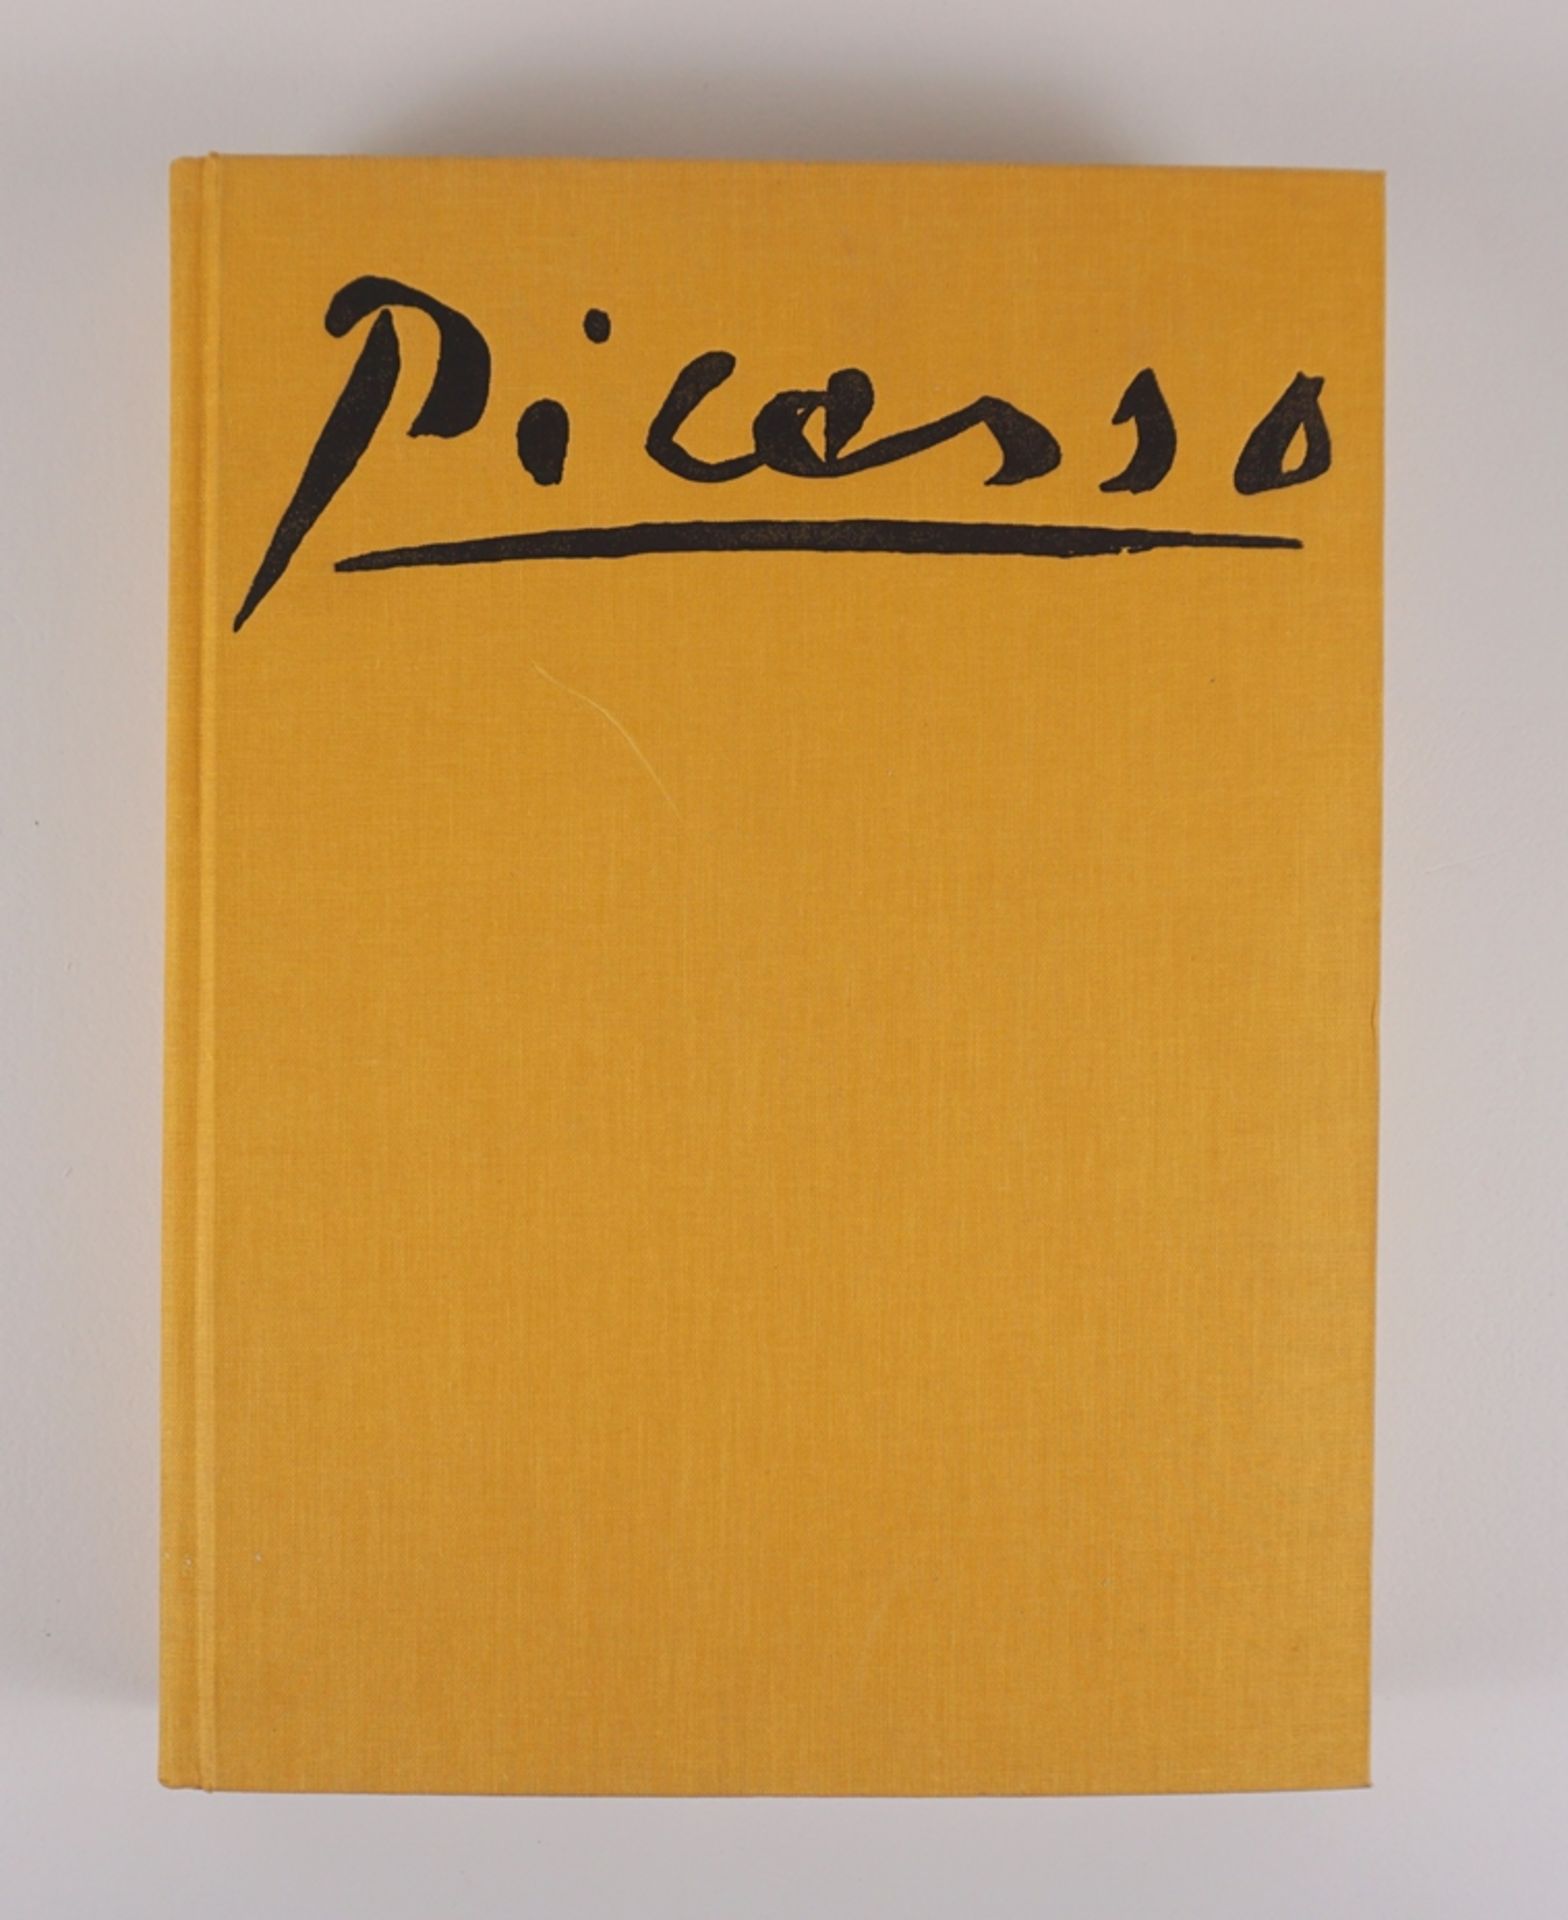 Werkverzeichnis der Picasso-Plakate, Christoph Czwiklitzer, Paris, 1970